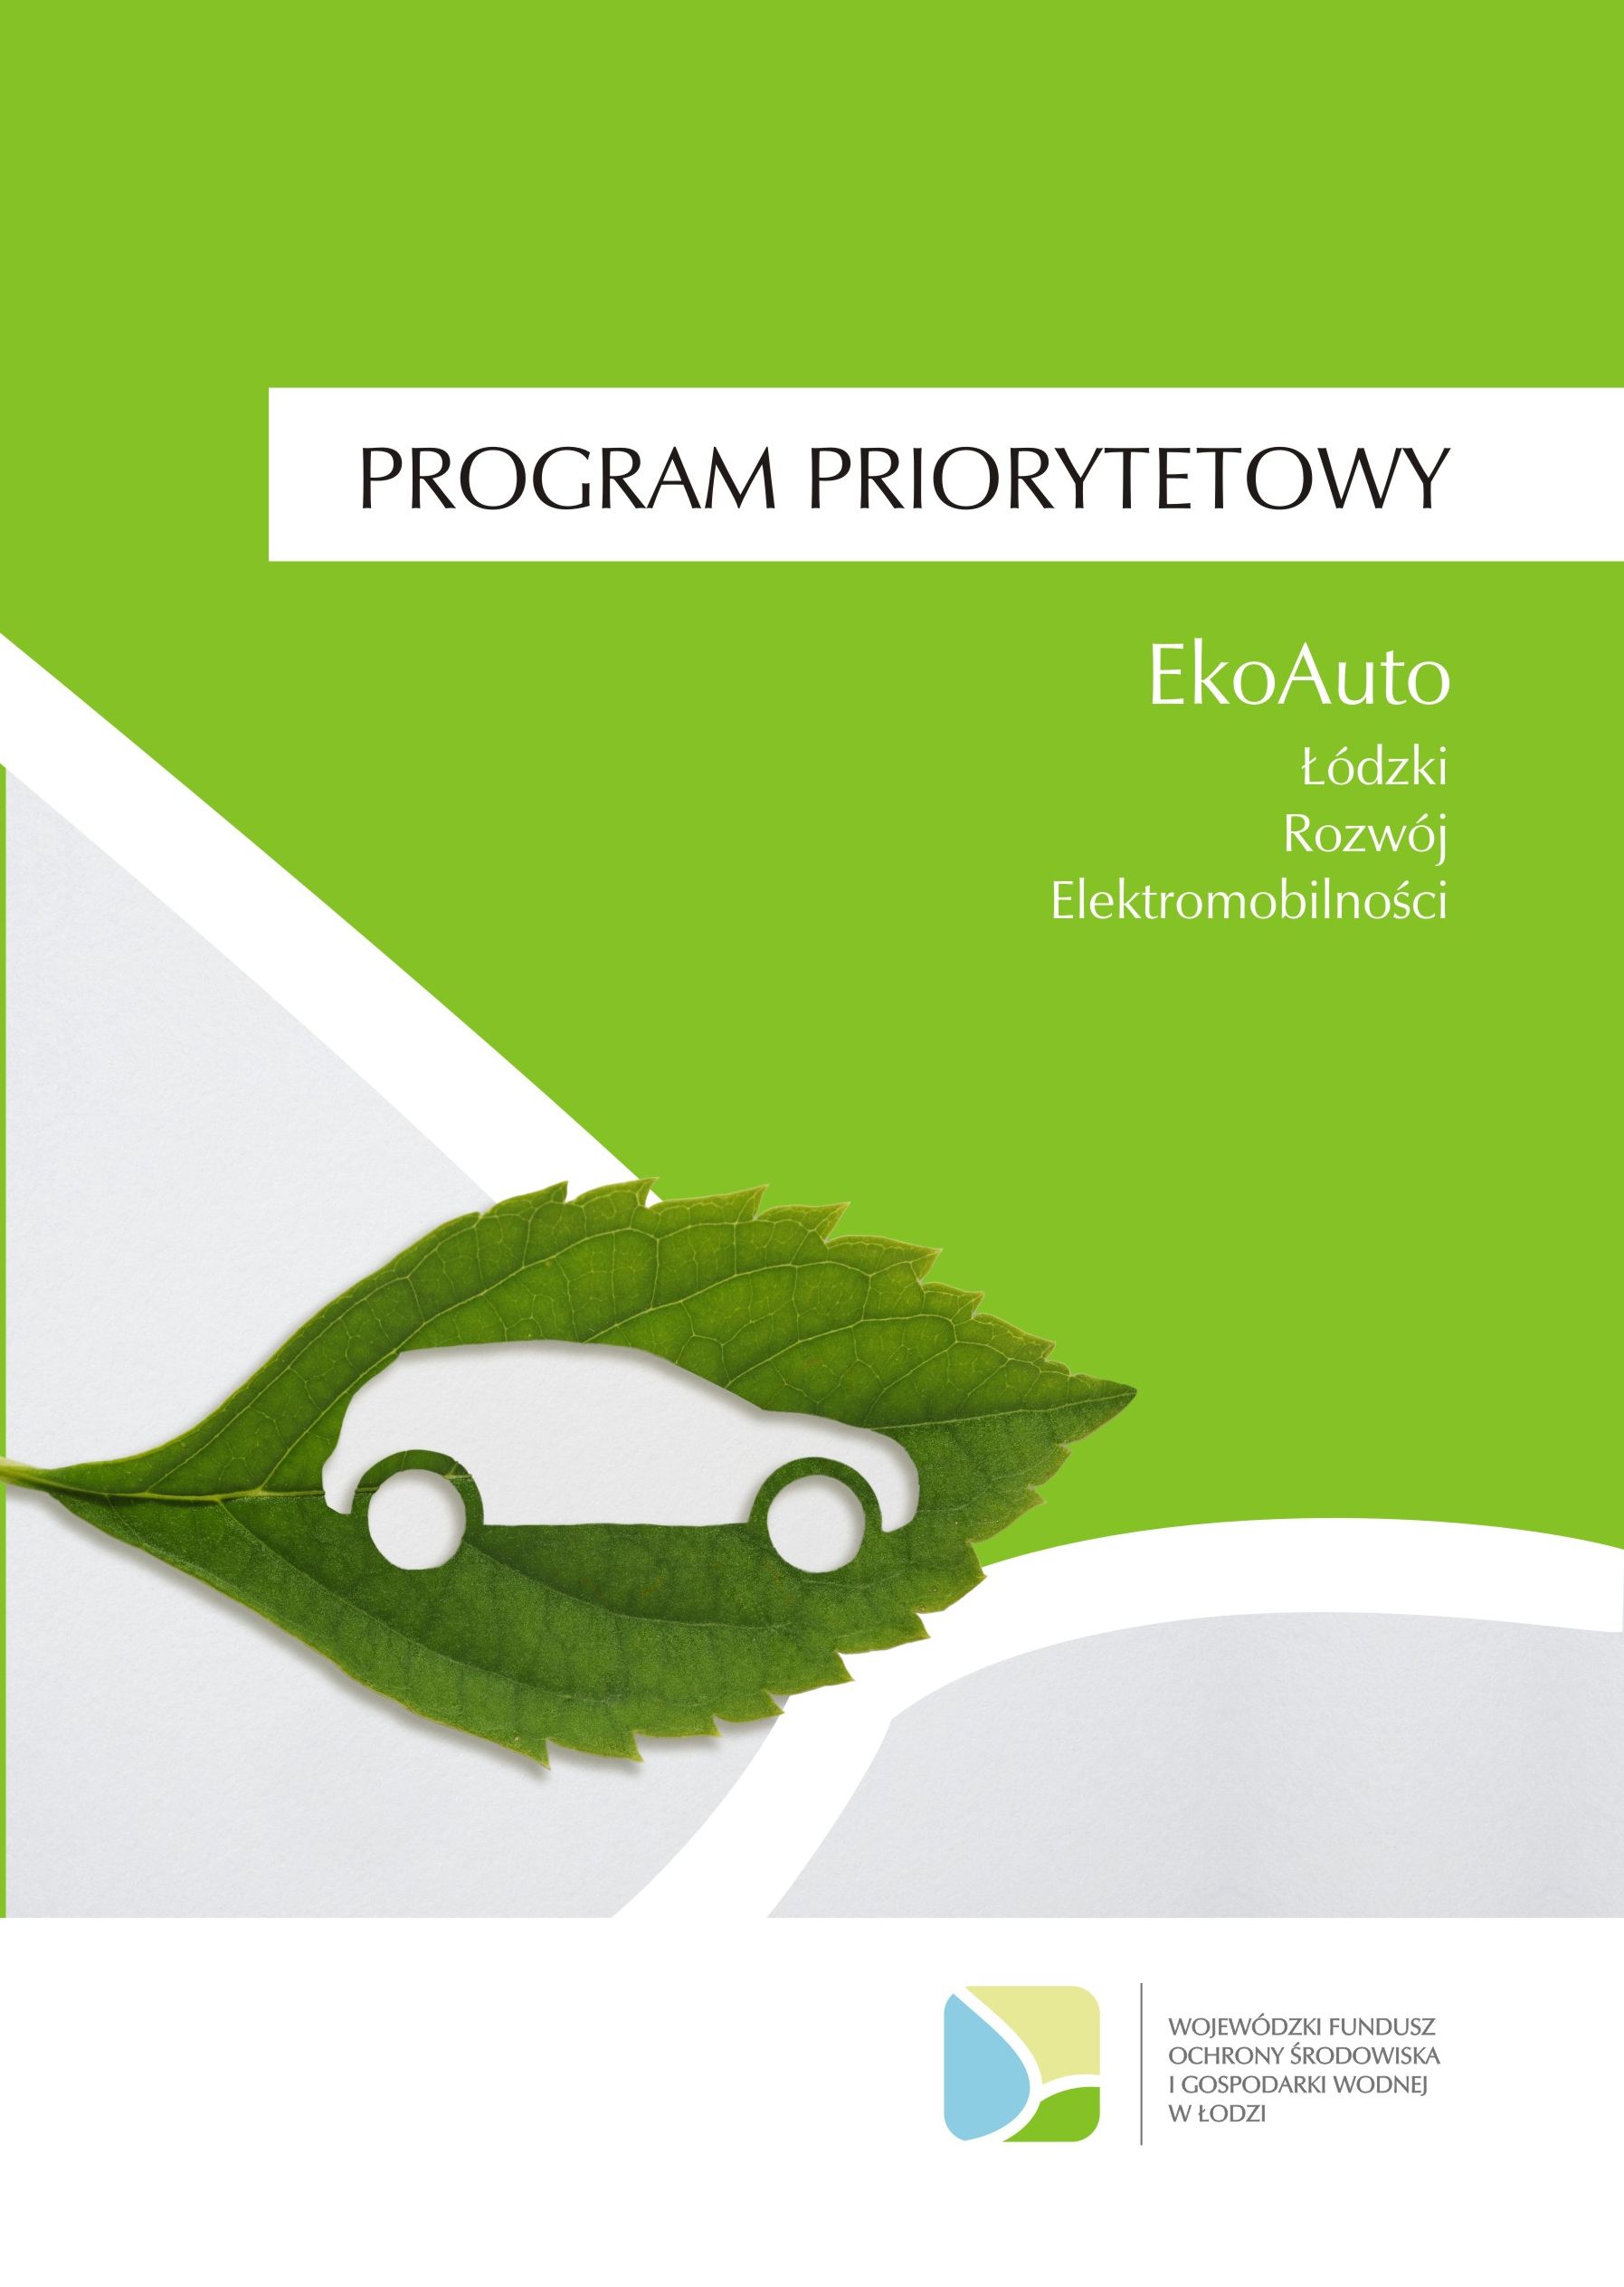 EkoAuto - kolejny nabór wniosków